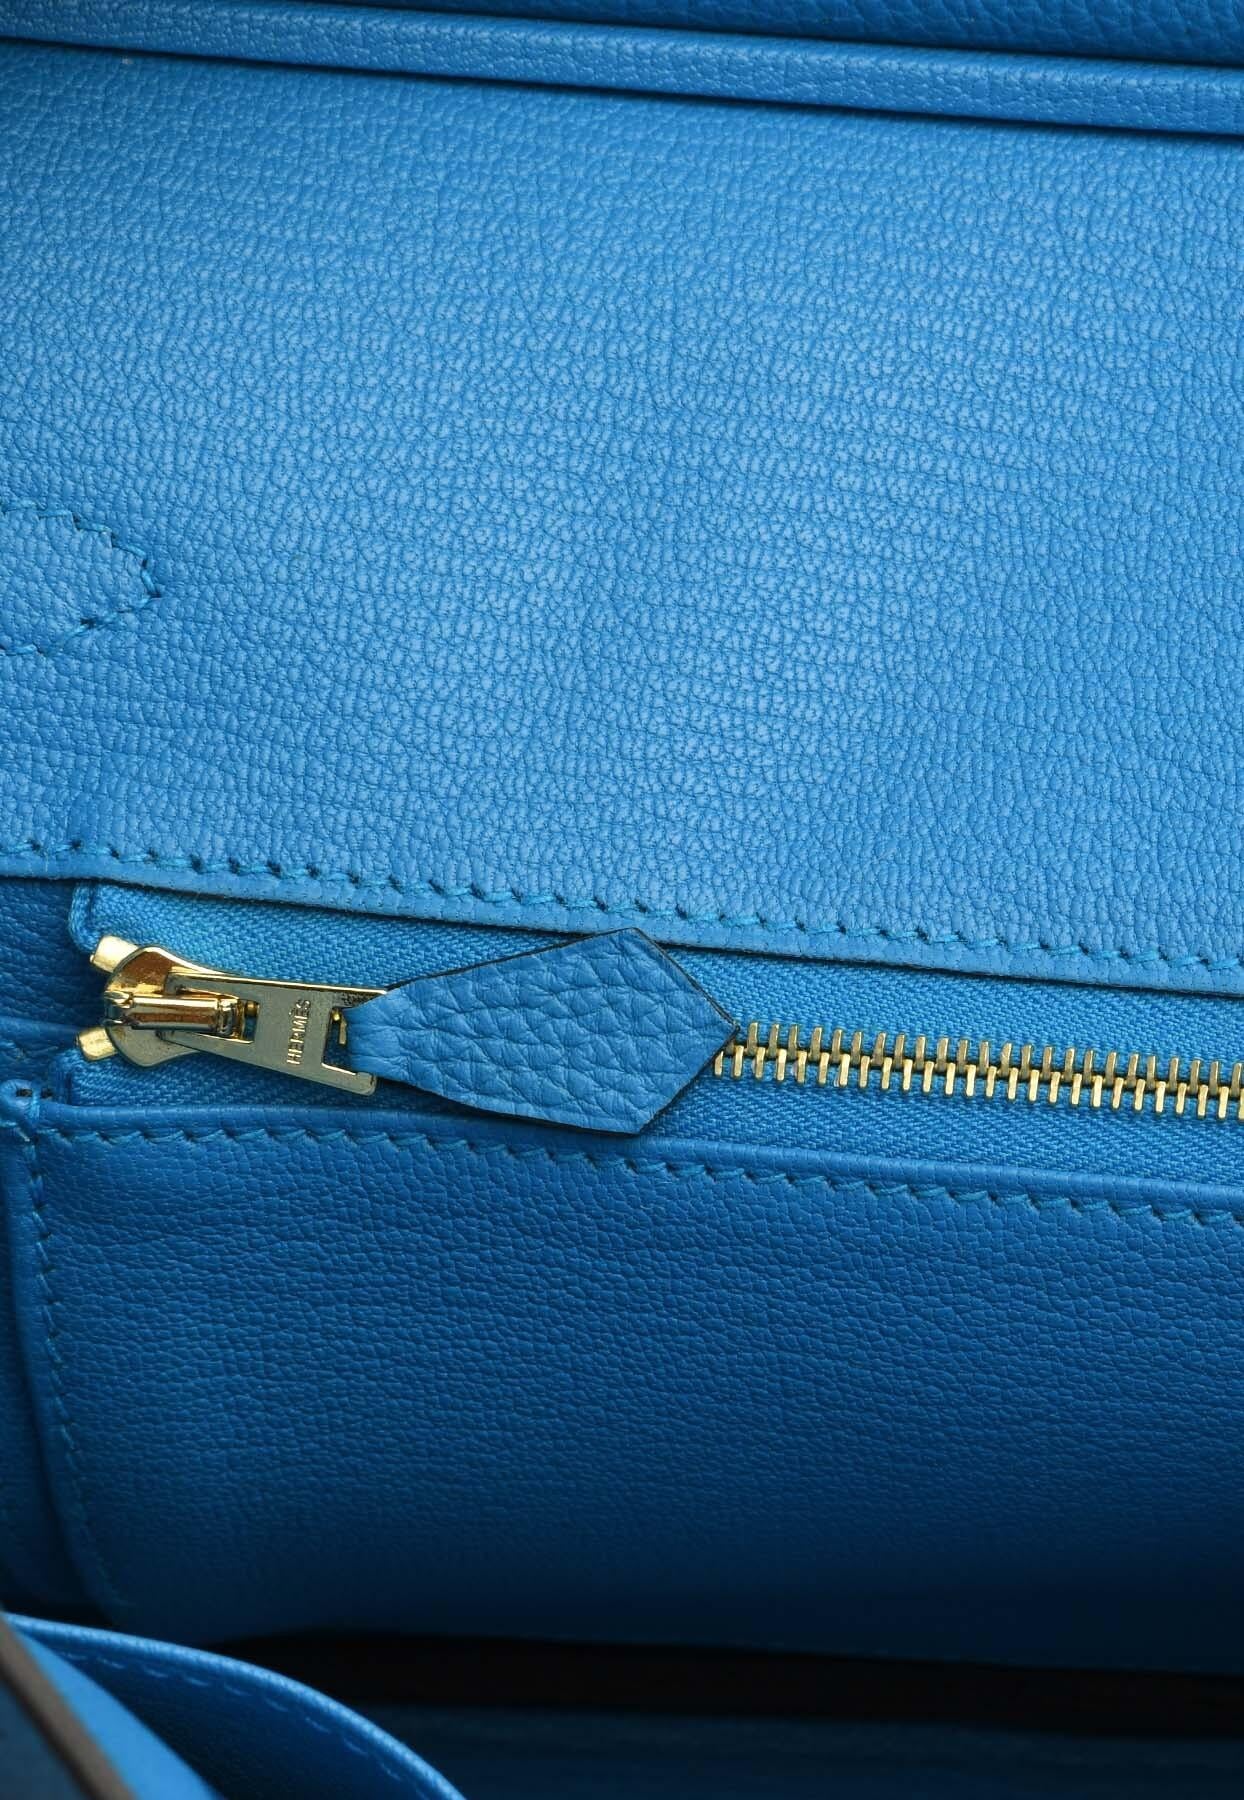 Birkin 25 Top Handle Bag in Bleu Zanzibar Togo with Gold Hardware For Sale 1